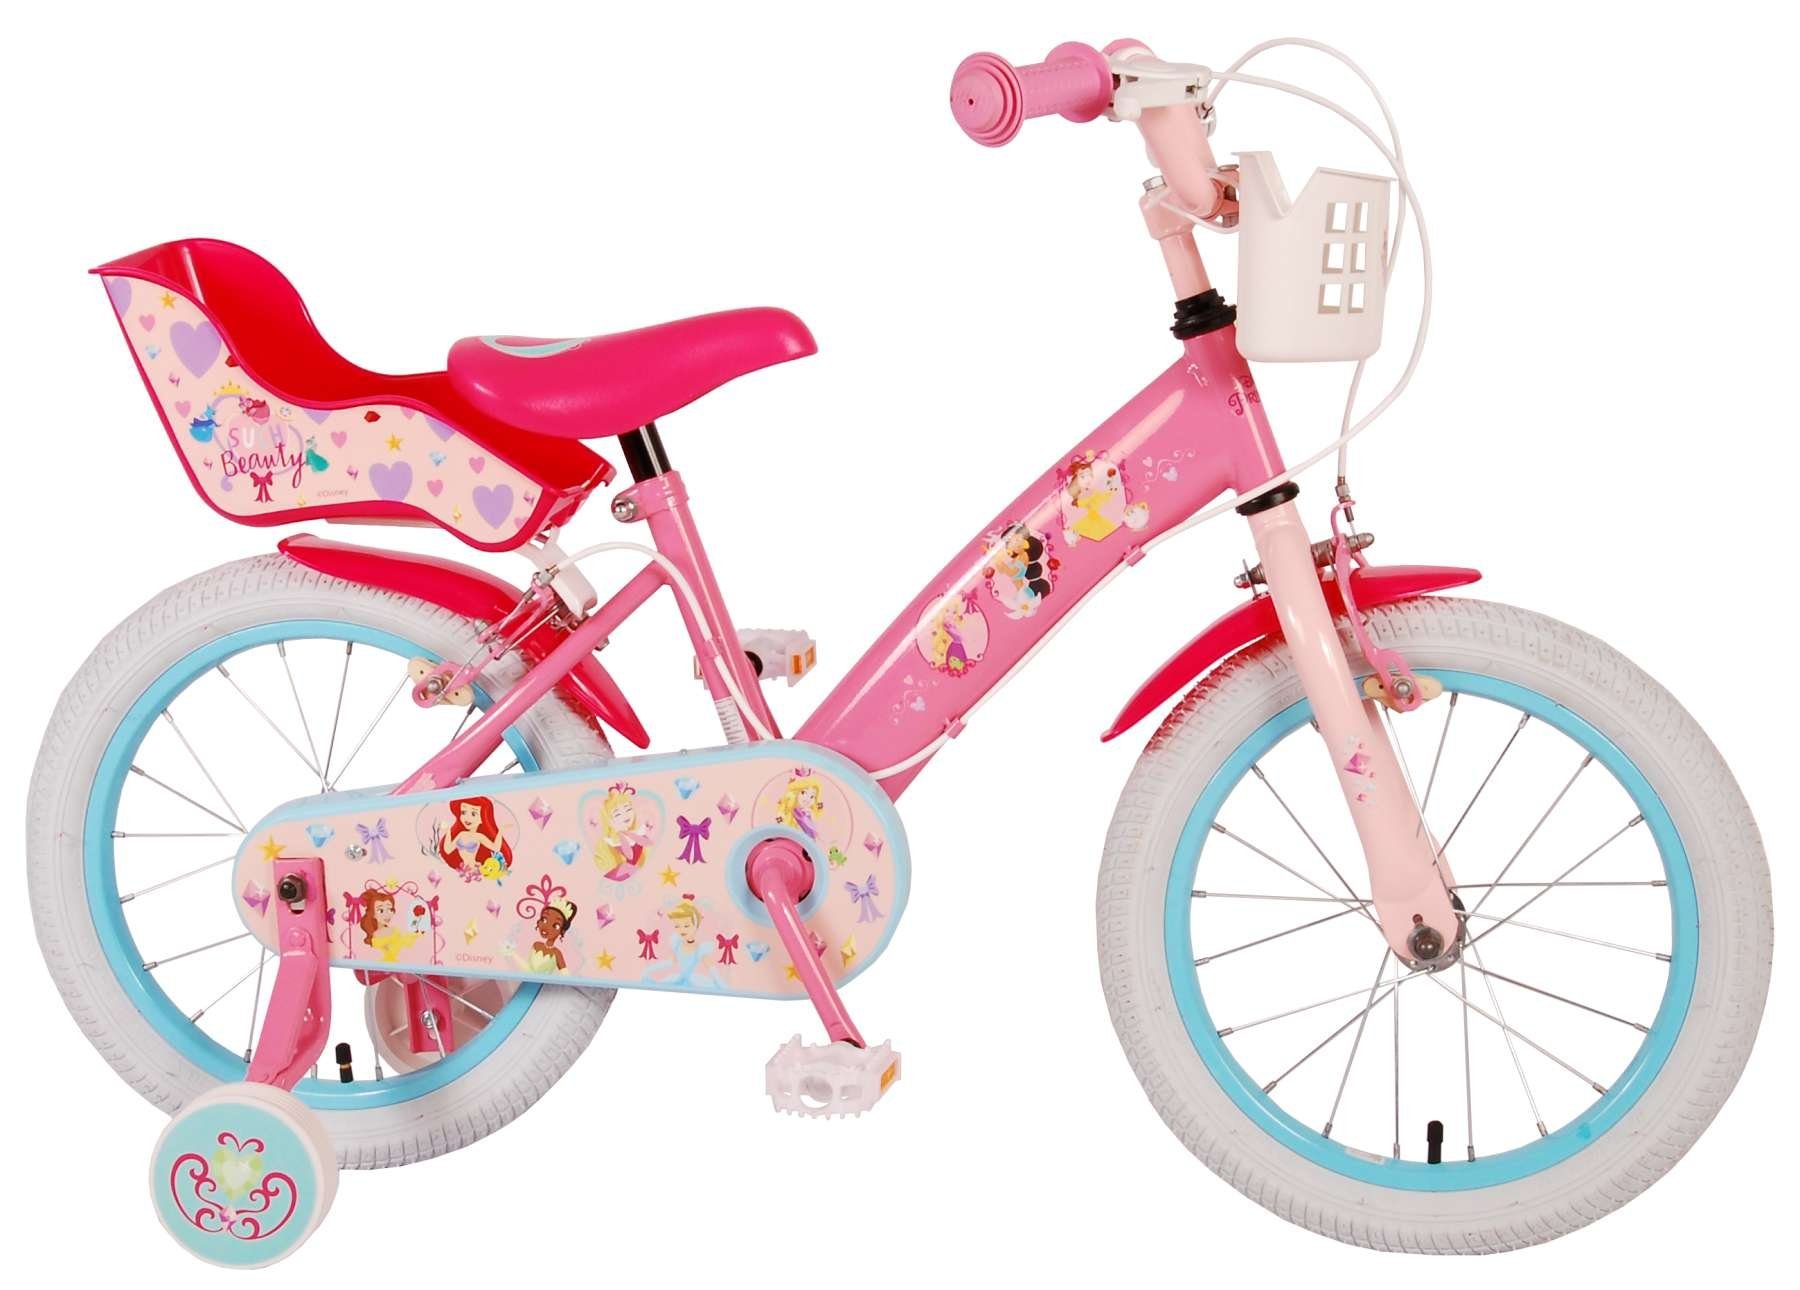 TPFSports Kinderfahrrad Disney Princess 16 Zoll mit 2x Handbremse, 1 Gang, (Mädchen Fahrrad - Rutschfeste Sicherheitsgriffe), Kinder Fahrrad 16 Zoll mit Stützräder Laufrad Mädchen Kinderrad